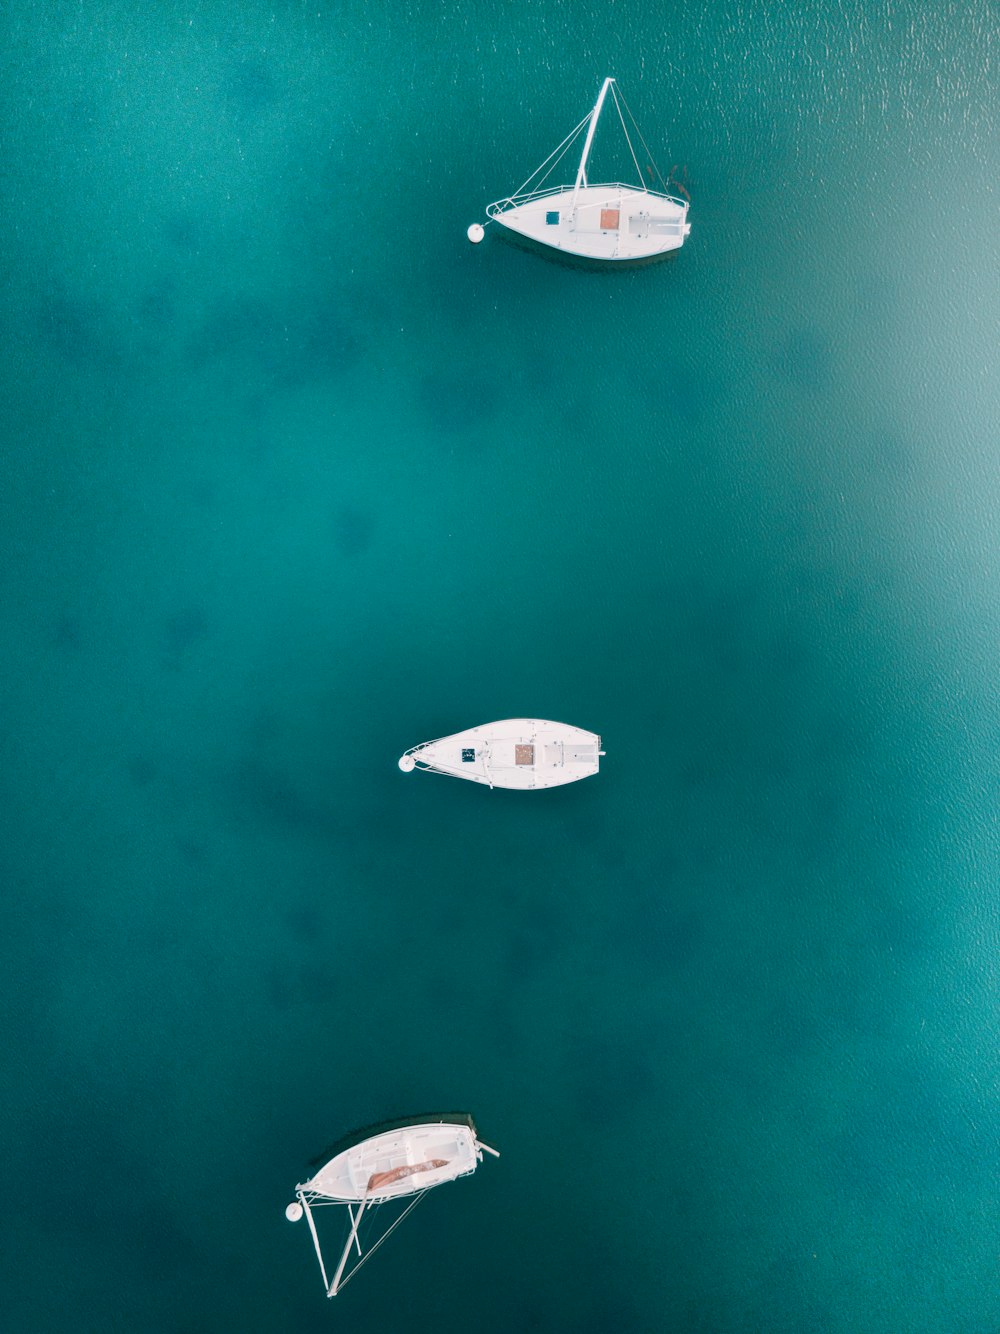 Fotografía de un pájaro de tres barcos blancos